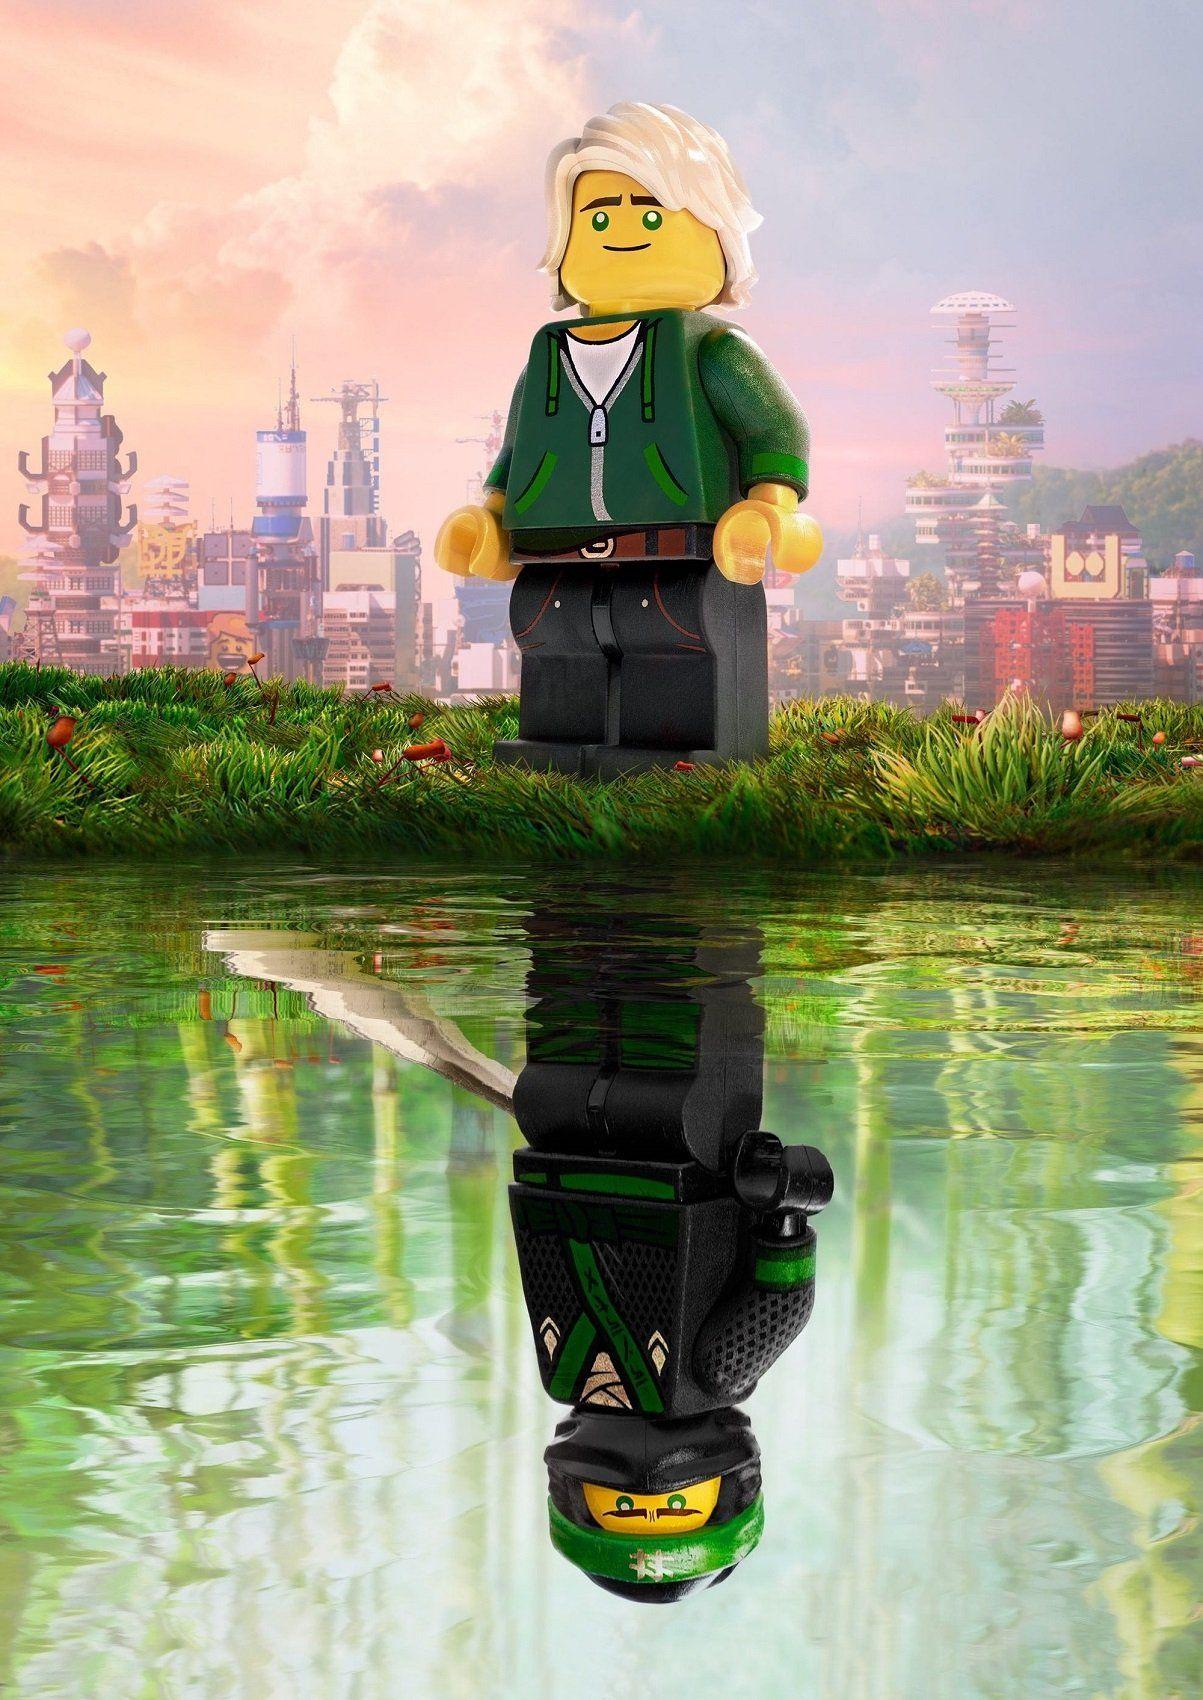 The LEGO Ninjago Movie Poster